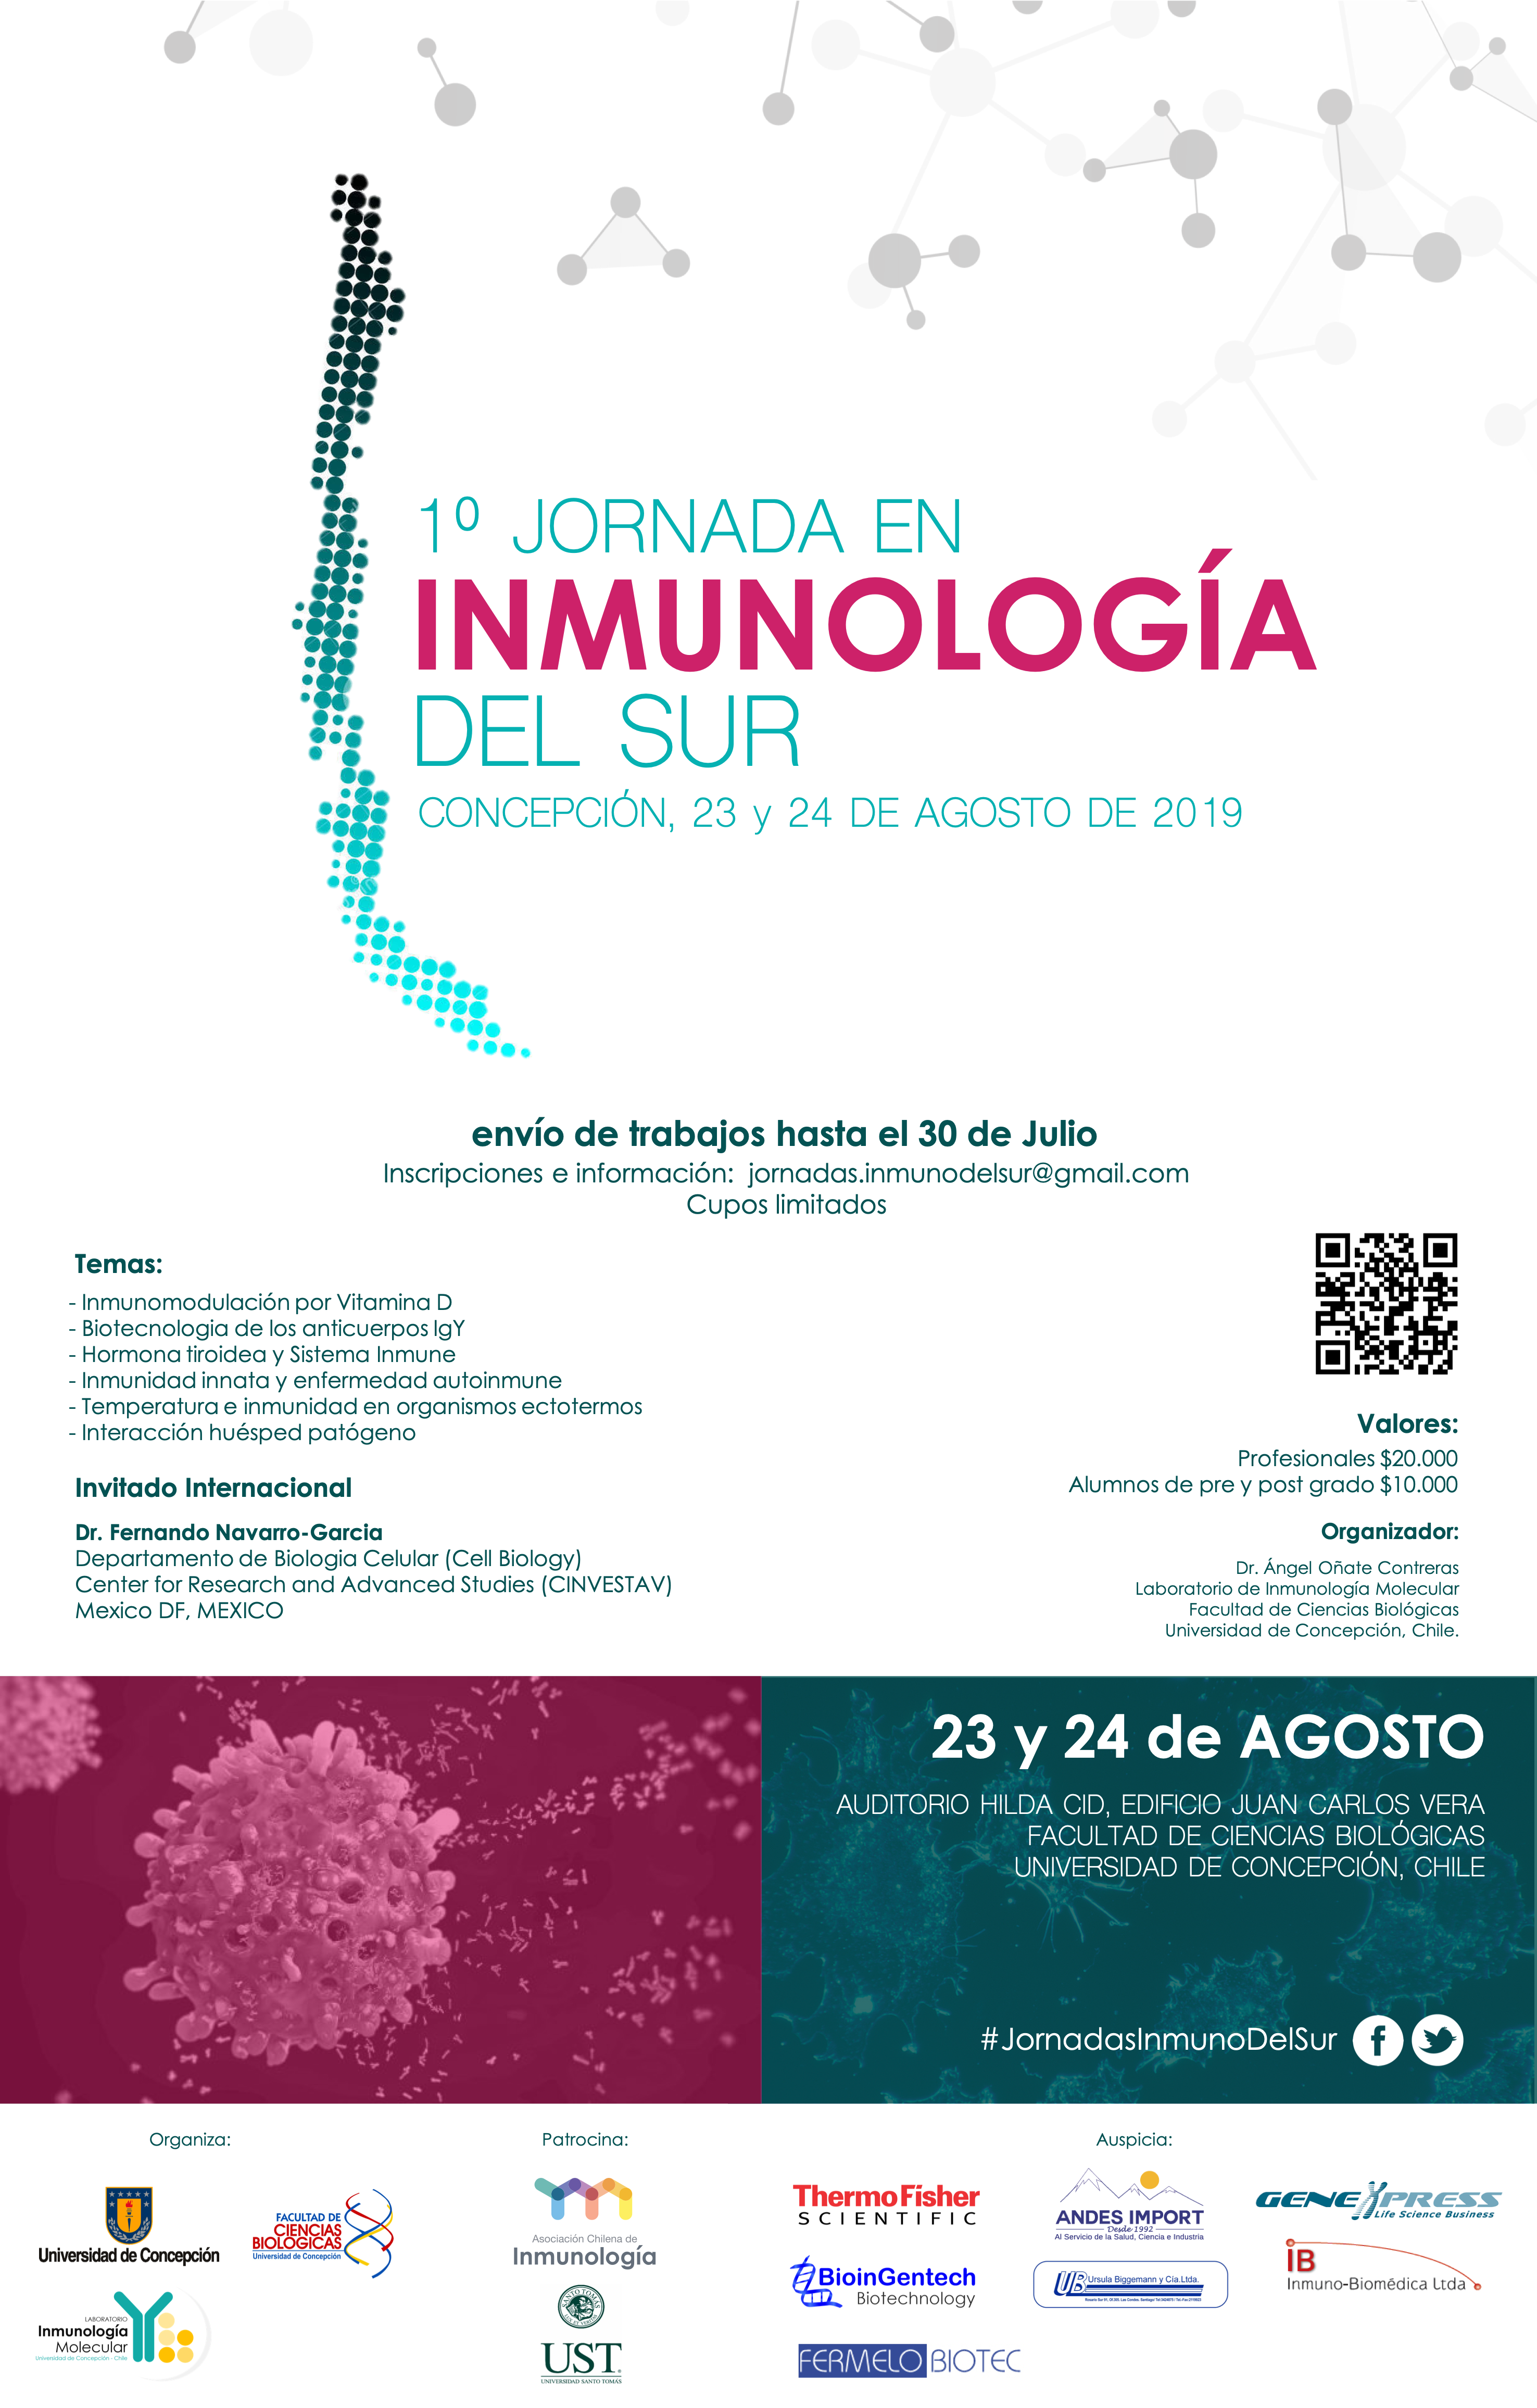 Jornadas de Inmunología del Sur graphic